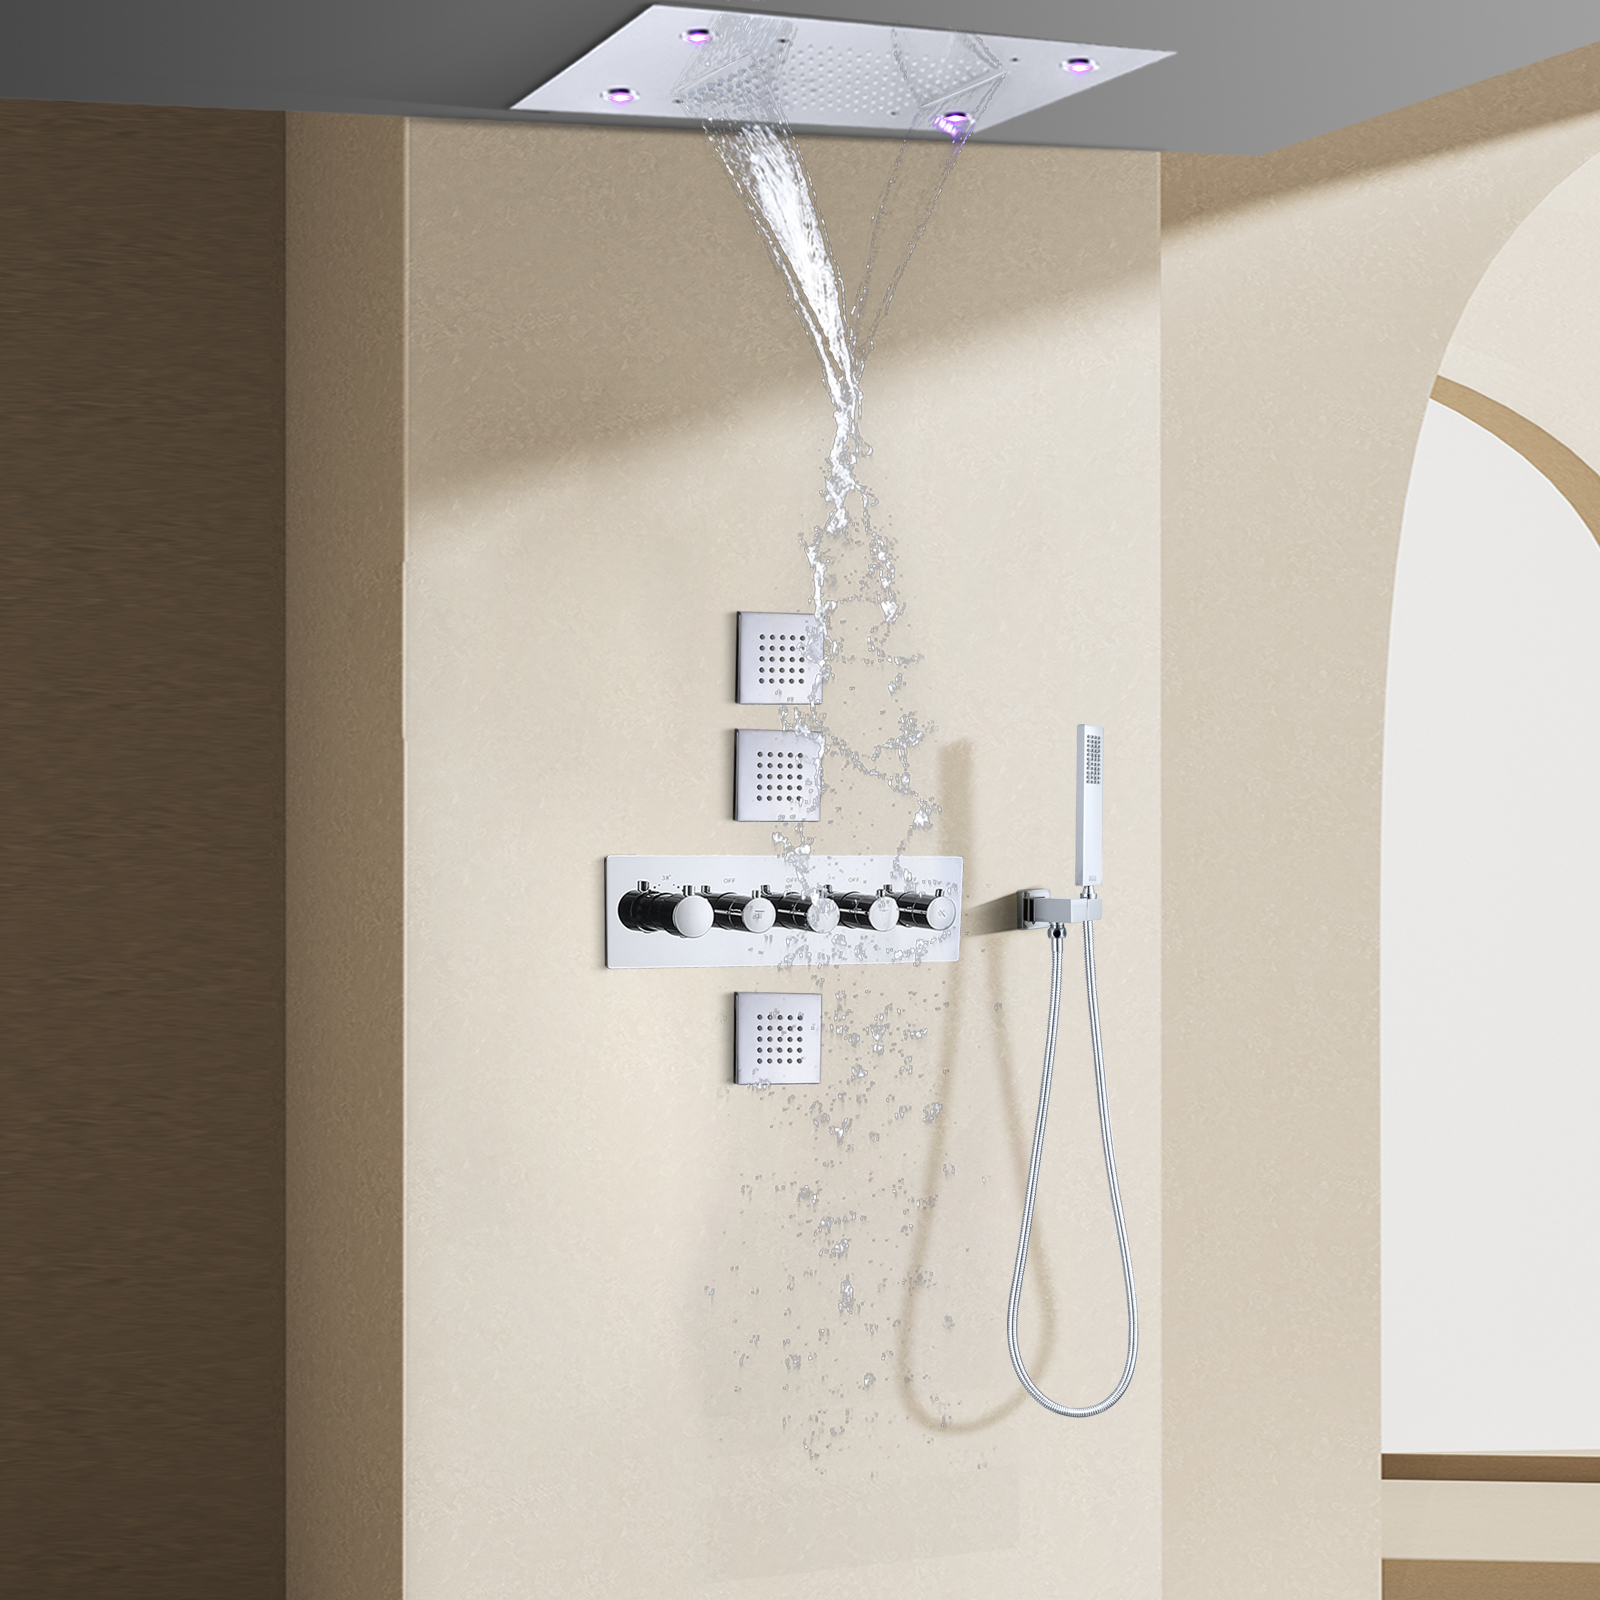 الكروم المصقول نظام دش الأمطار ثرموستاتي 14 × 20 بوصة الحمام LED مجموعة دش ثرموستاتي مع طائرات الجسم